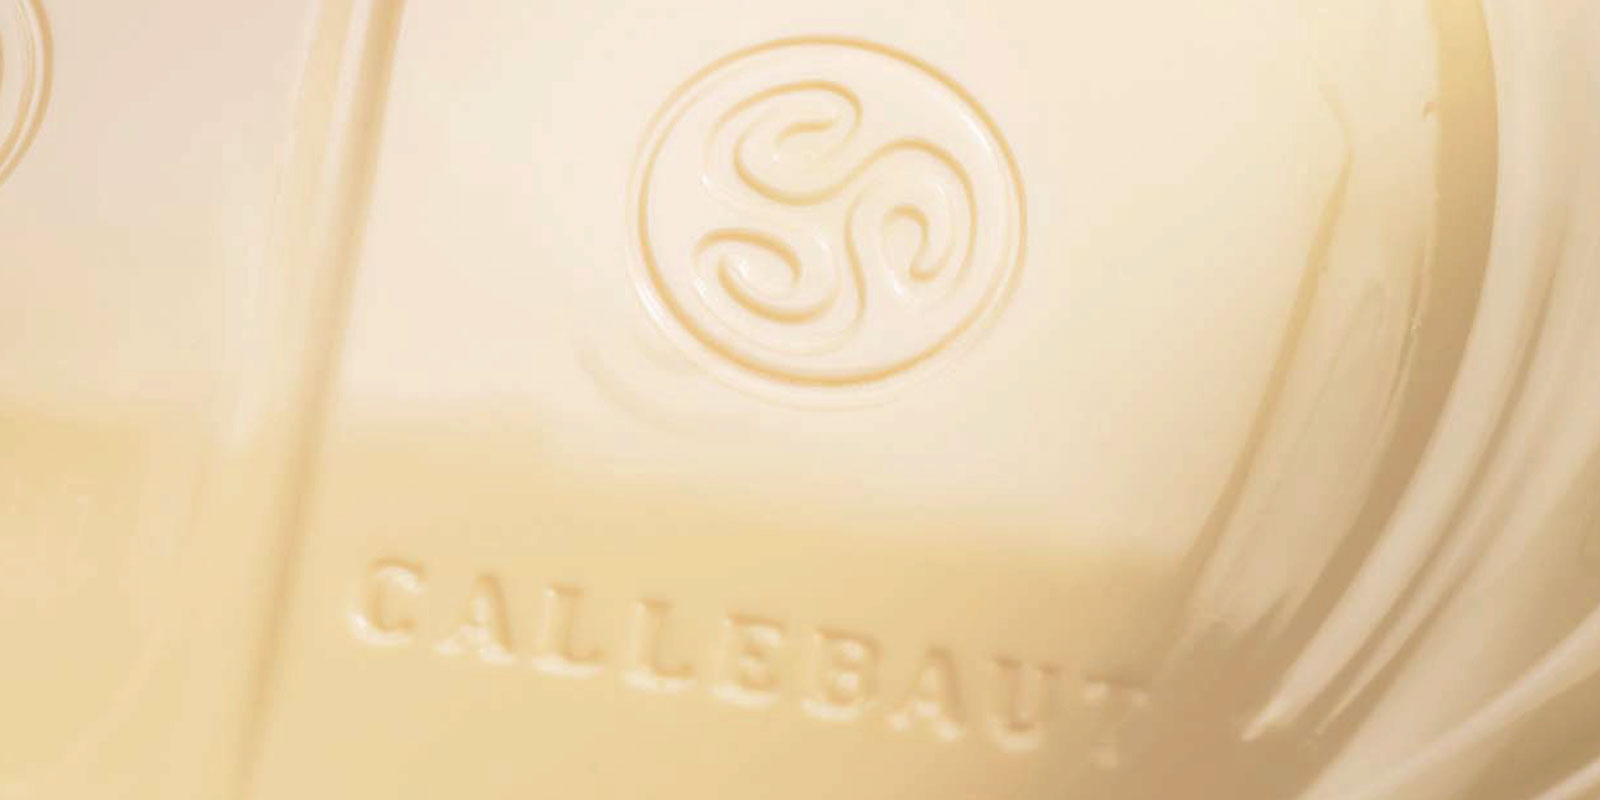 Cioccolatini bianchi di Callebaut Il cioccolato bianco e il risultato della miscelazione di burro di cacao, latte in polvere e zucchero. Il rapporto di miscelazione di questi ingredienti - ad esempio vanillina, vaniglia o lecitina - determina il gusto del prodotto finale.